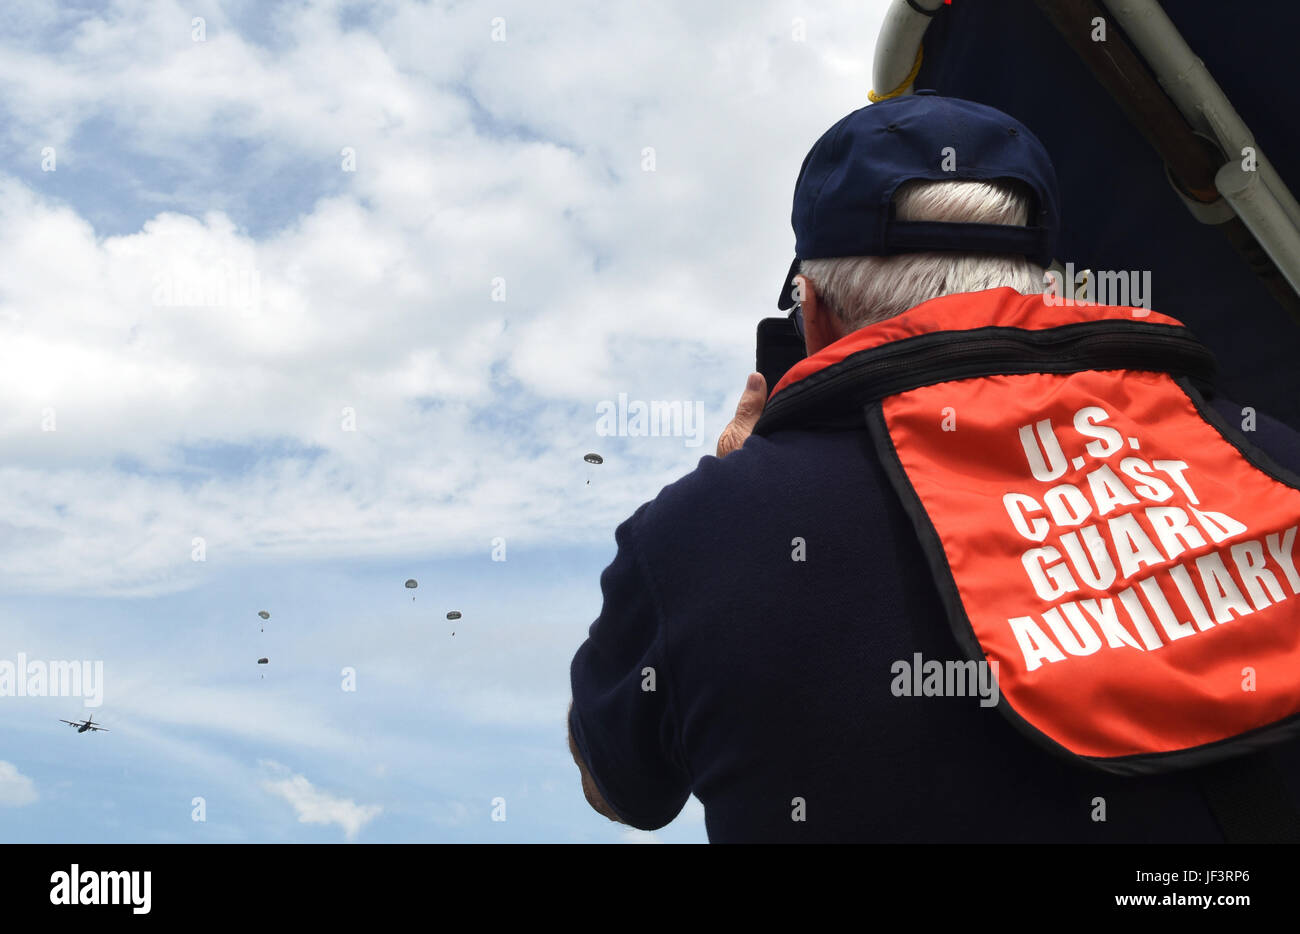 Un membro dell'U.S. La guardia costiera orologi ausiliario come membri della 181st Meteo paracadute di volo al di fuori di un C-130 Hercules durante una deliberata goccia d'acqua nel lago vale la pena in Forth Worth, Texas, 20 maggio 2017. La Guardia Costiera fornito ausiliario di supporto per imbarcazioni di aiuti in paracadute e il ponticello di ripristino e fornite le funzionalità medevac se necessario. (Texas Air National Guard photo by Staff Sgt. Kristina Overton) Foto Stock